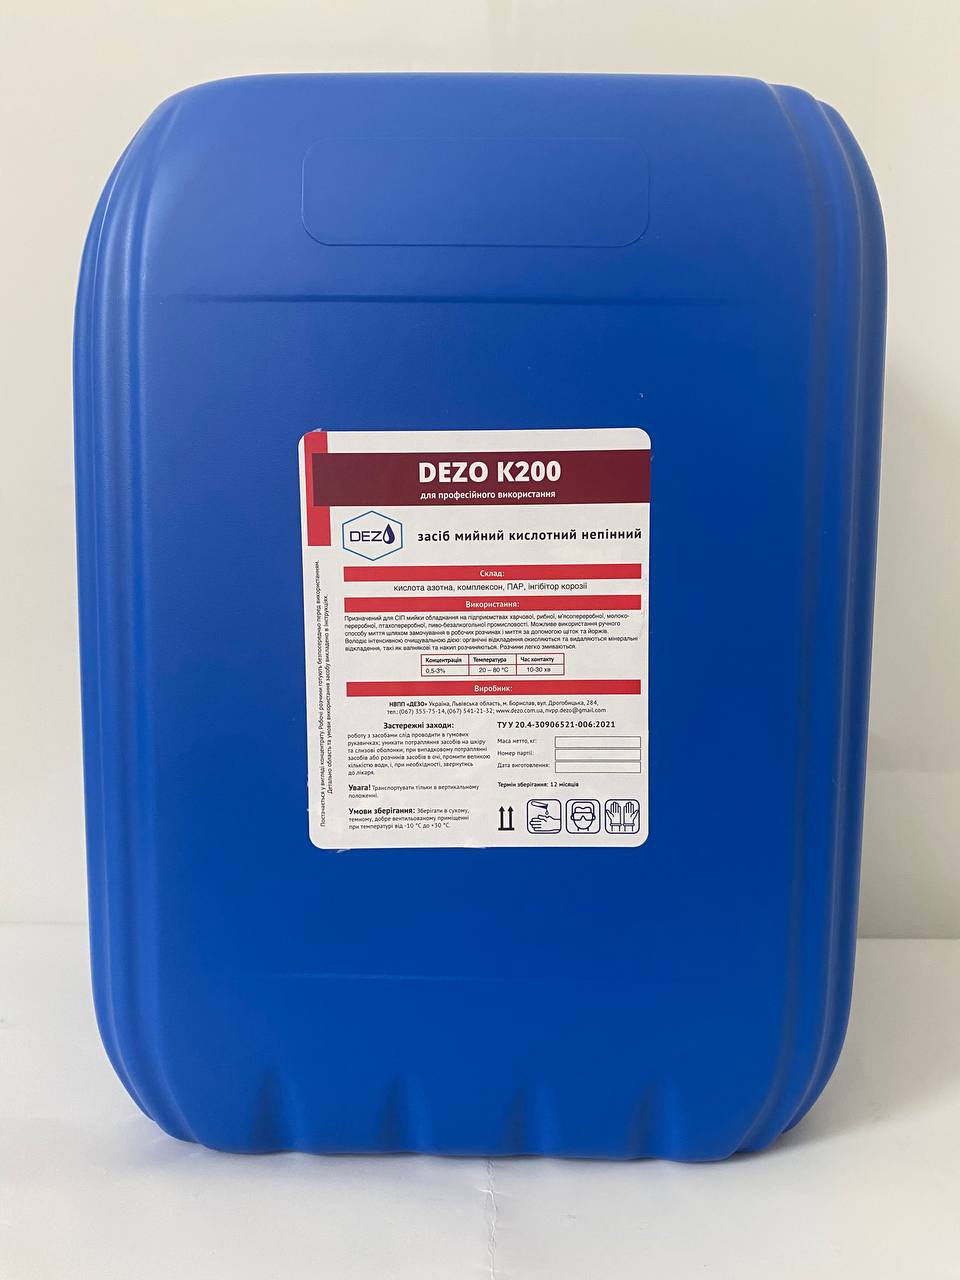 Засіб мийний кислотний непінний DEZO К200, 5 кг